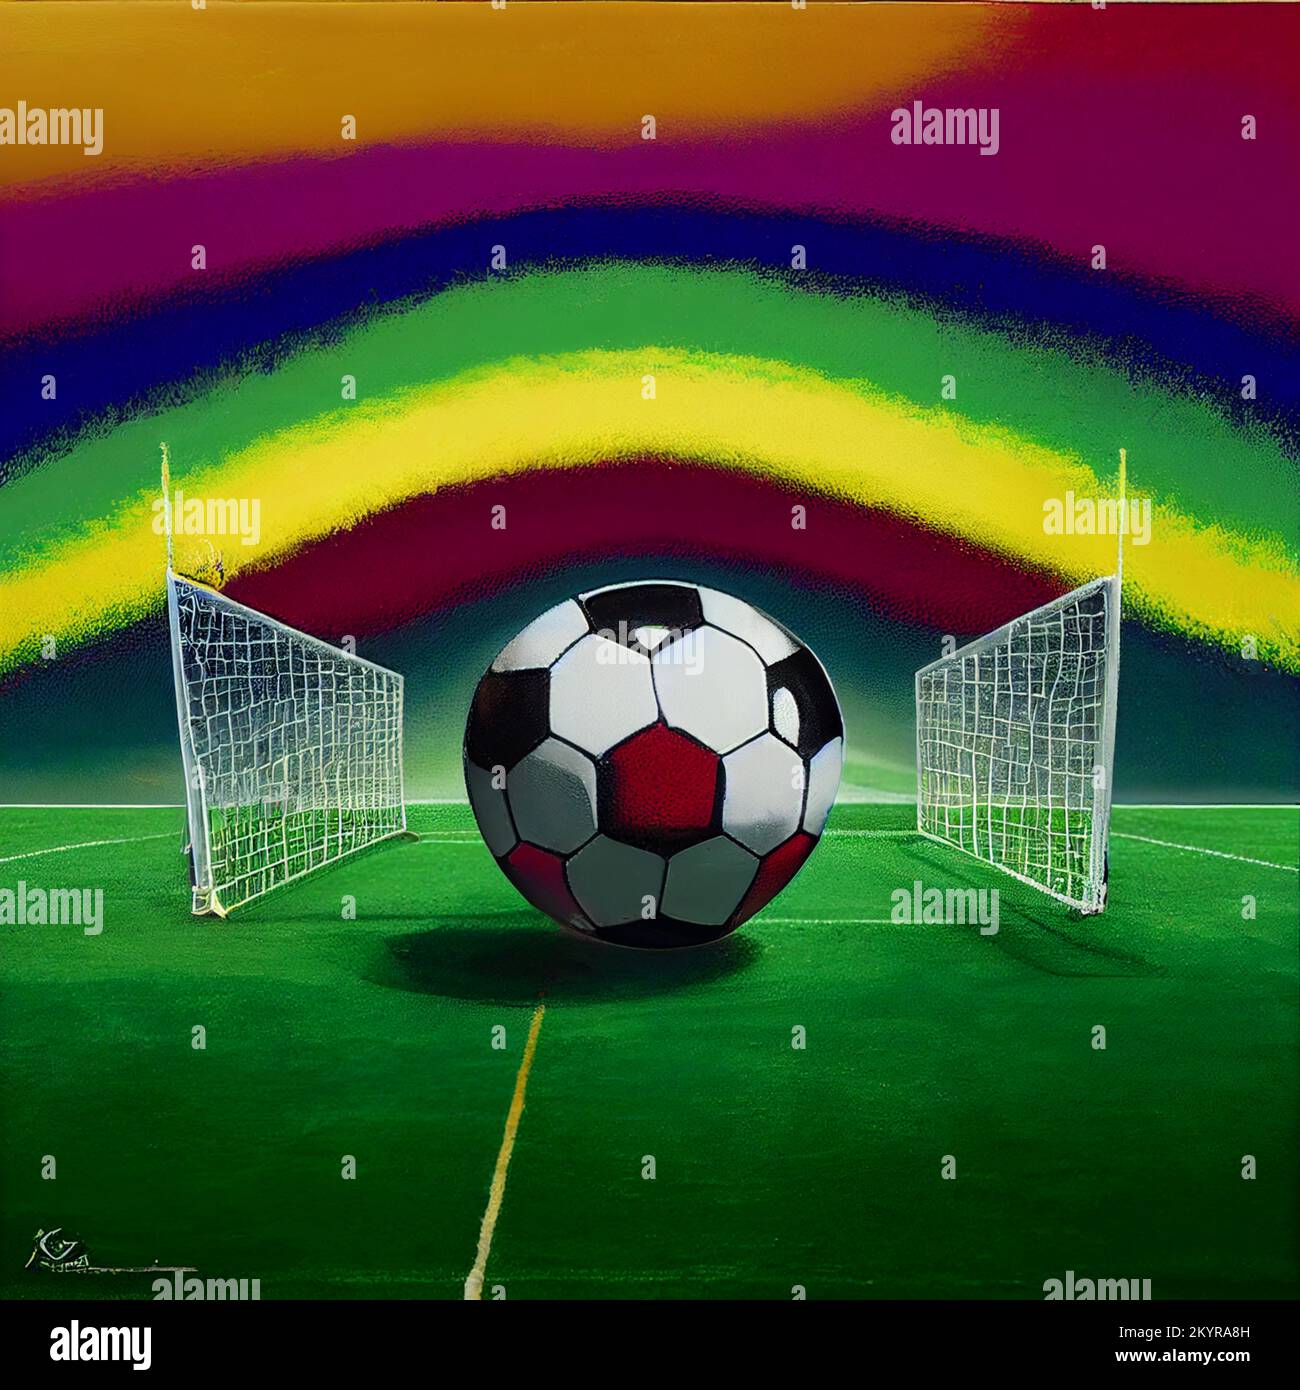 Fútbol / ilustración de fútbol, celebración de la Copa del Mundo, colores arcoiris Foto de stock